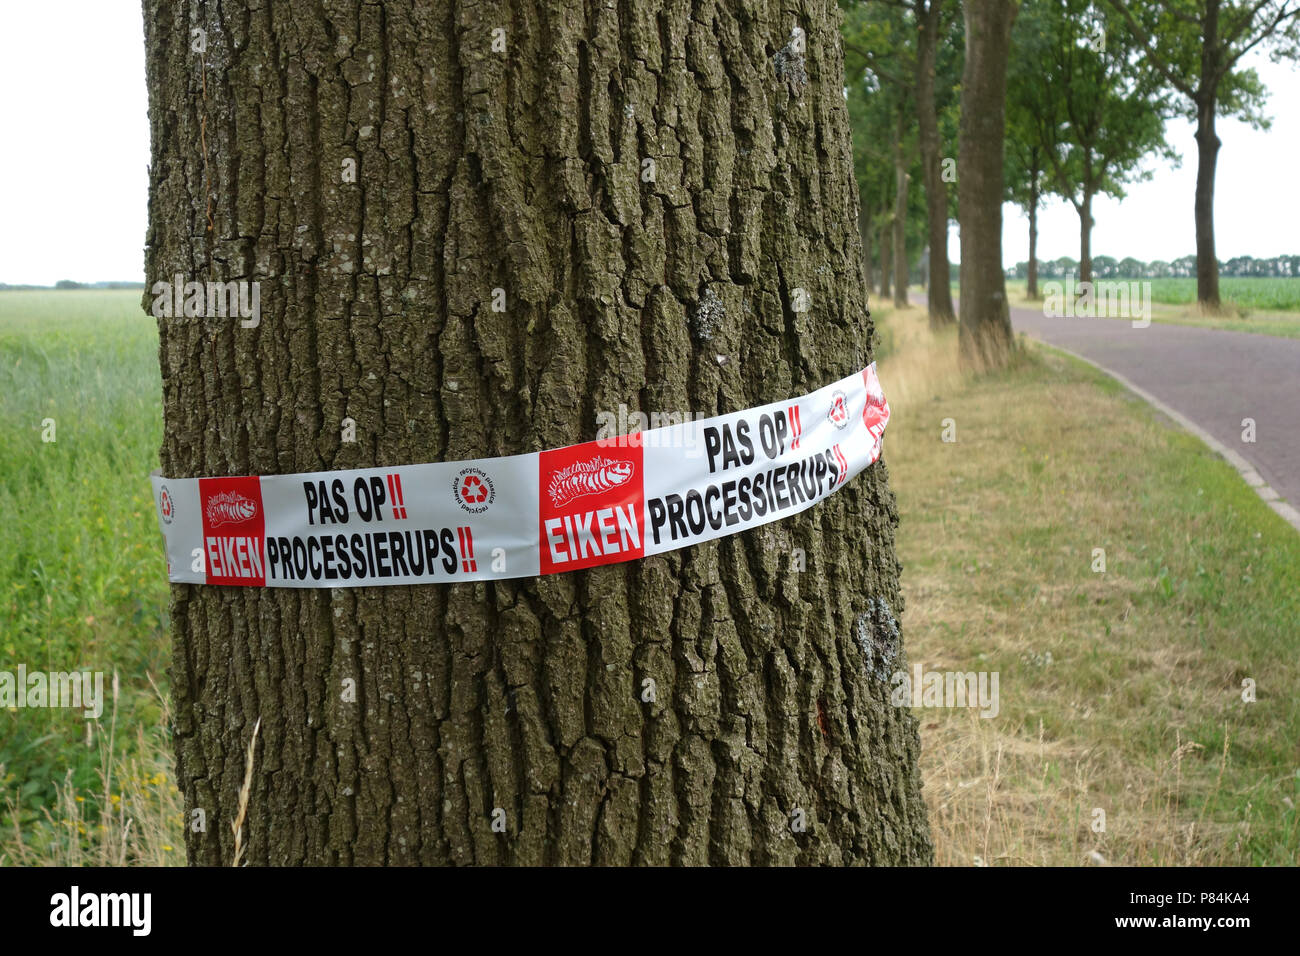 Bannière sur arbre, avertissement de la chenille processionnaire chêne en Drenthe, Pays-Bas Banque D'Images